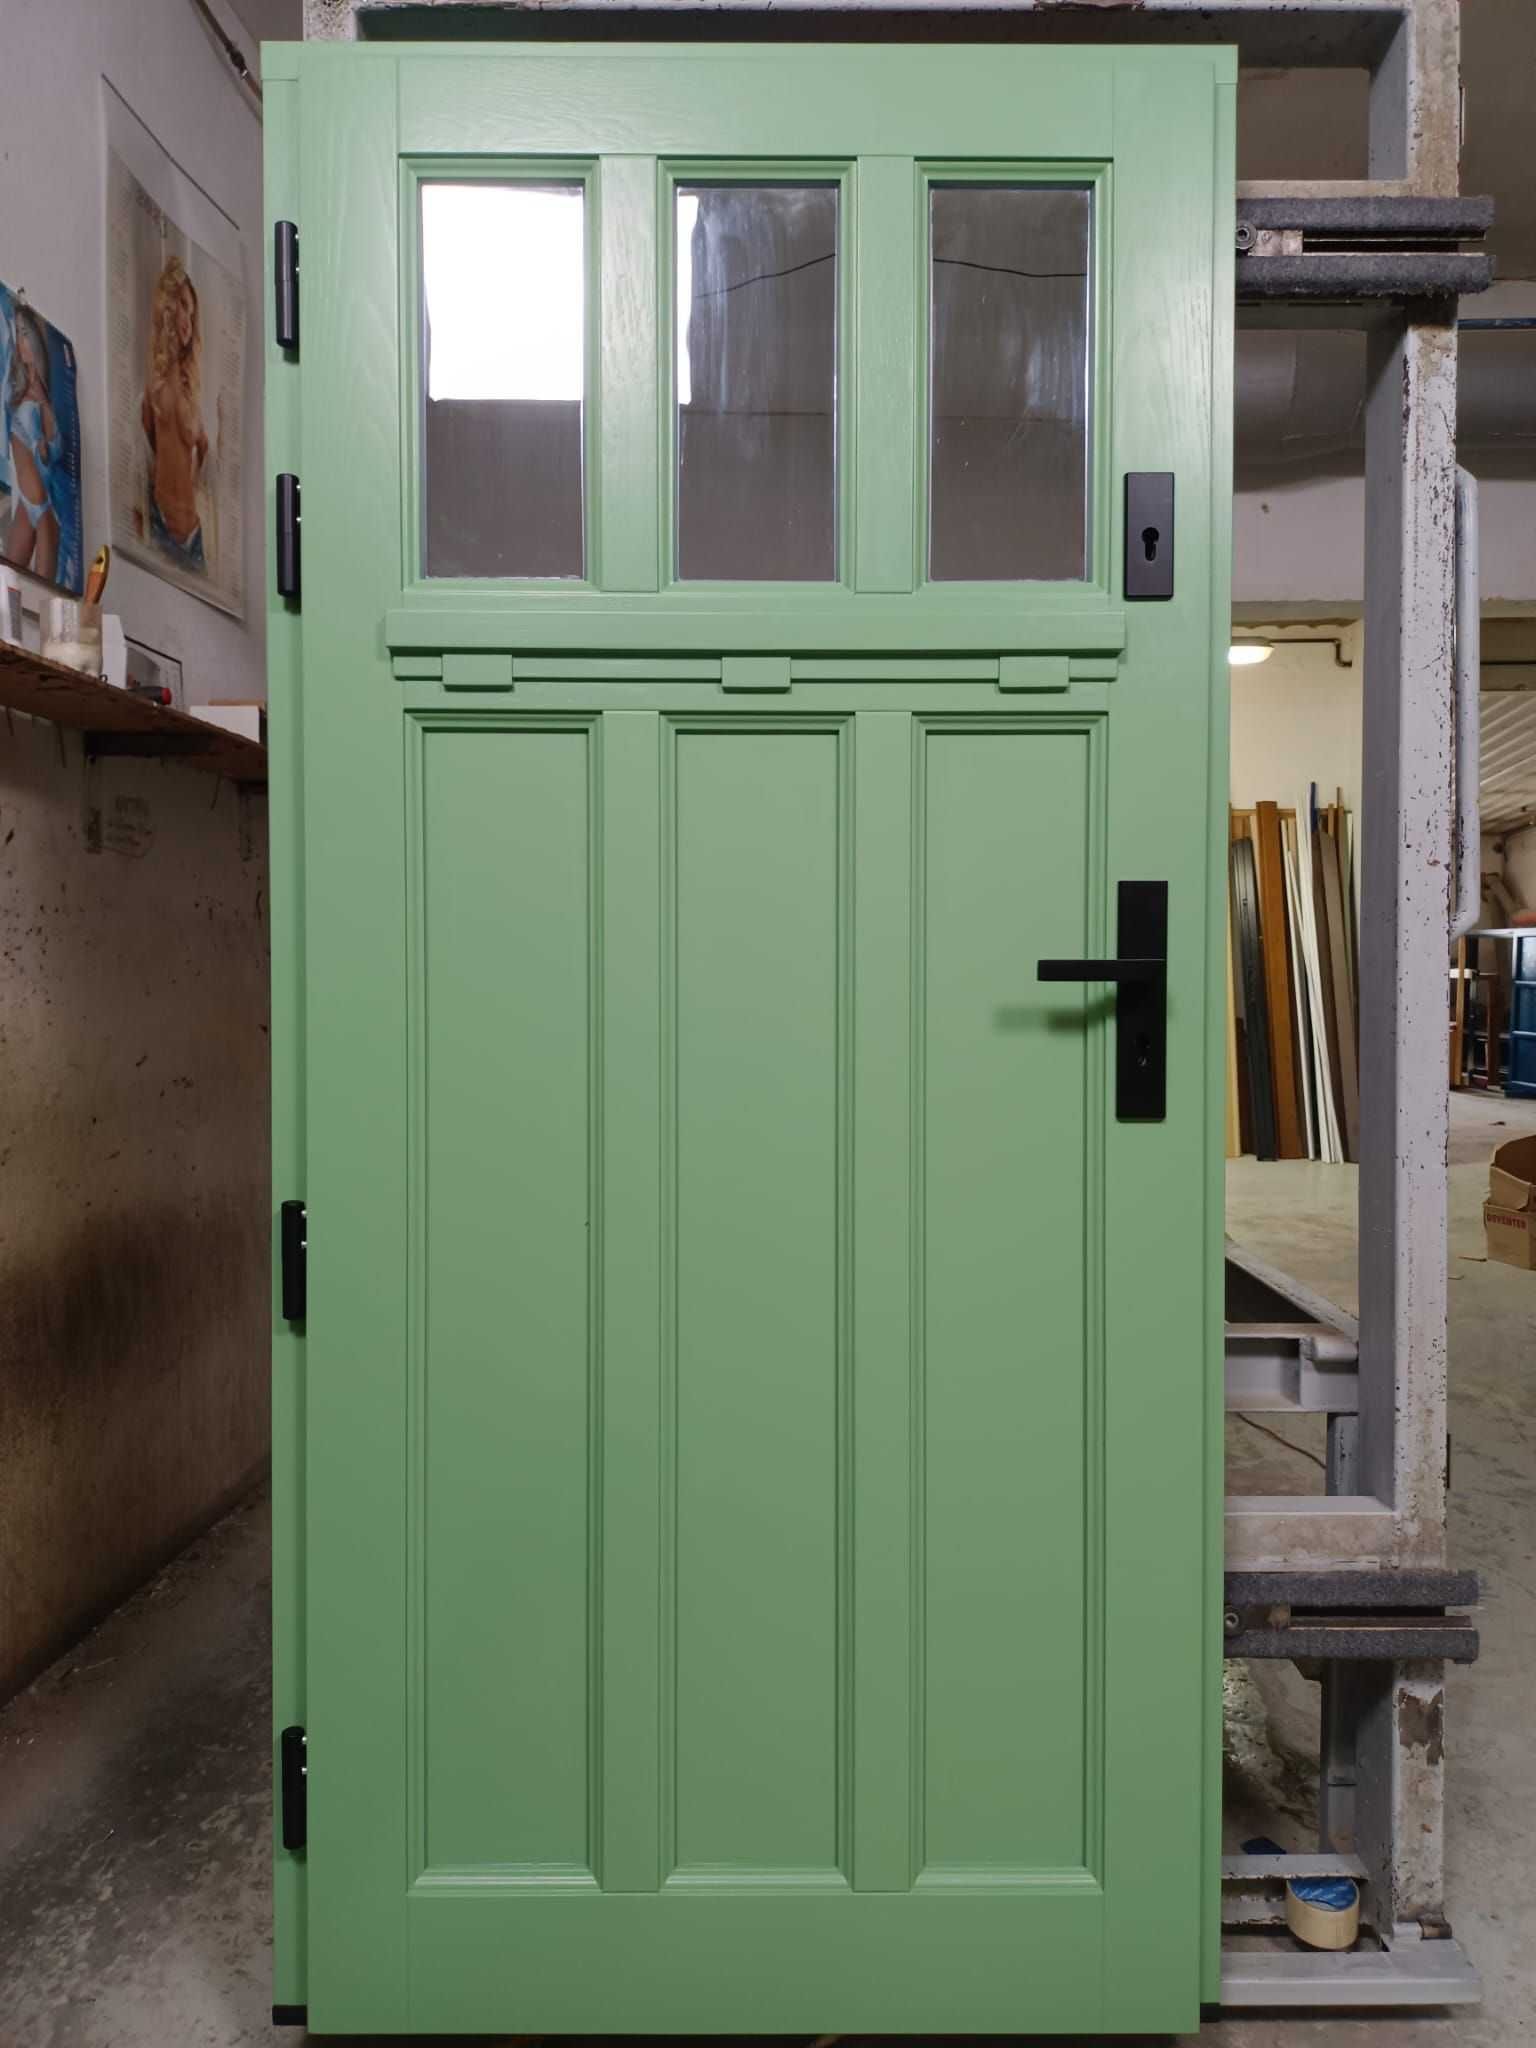 Drzwi drewniane  dębowe zewnętrzne dostawa GRATIS [CZYSTE POWIETRZE]